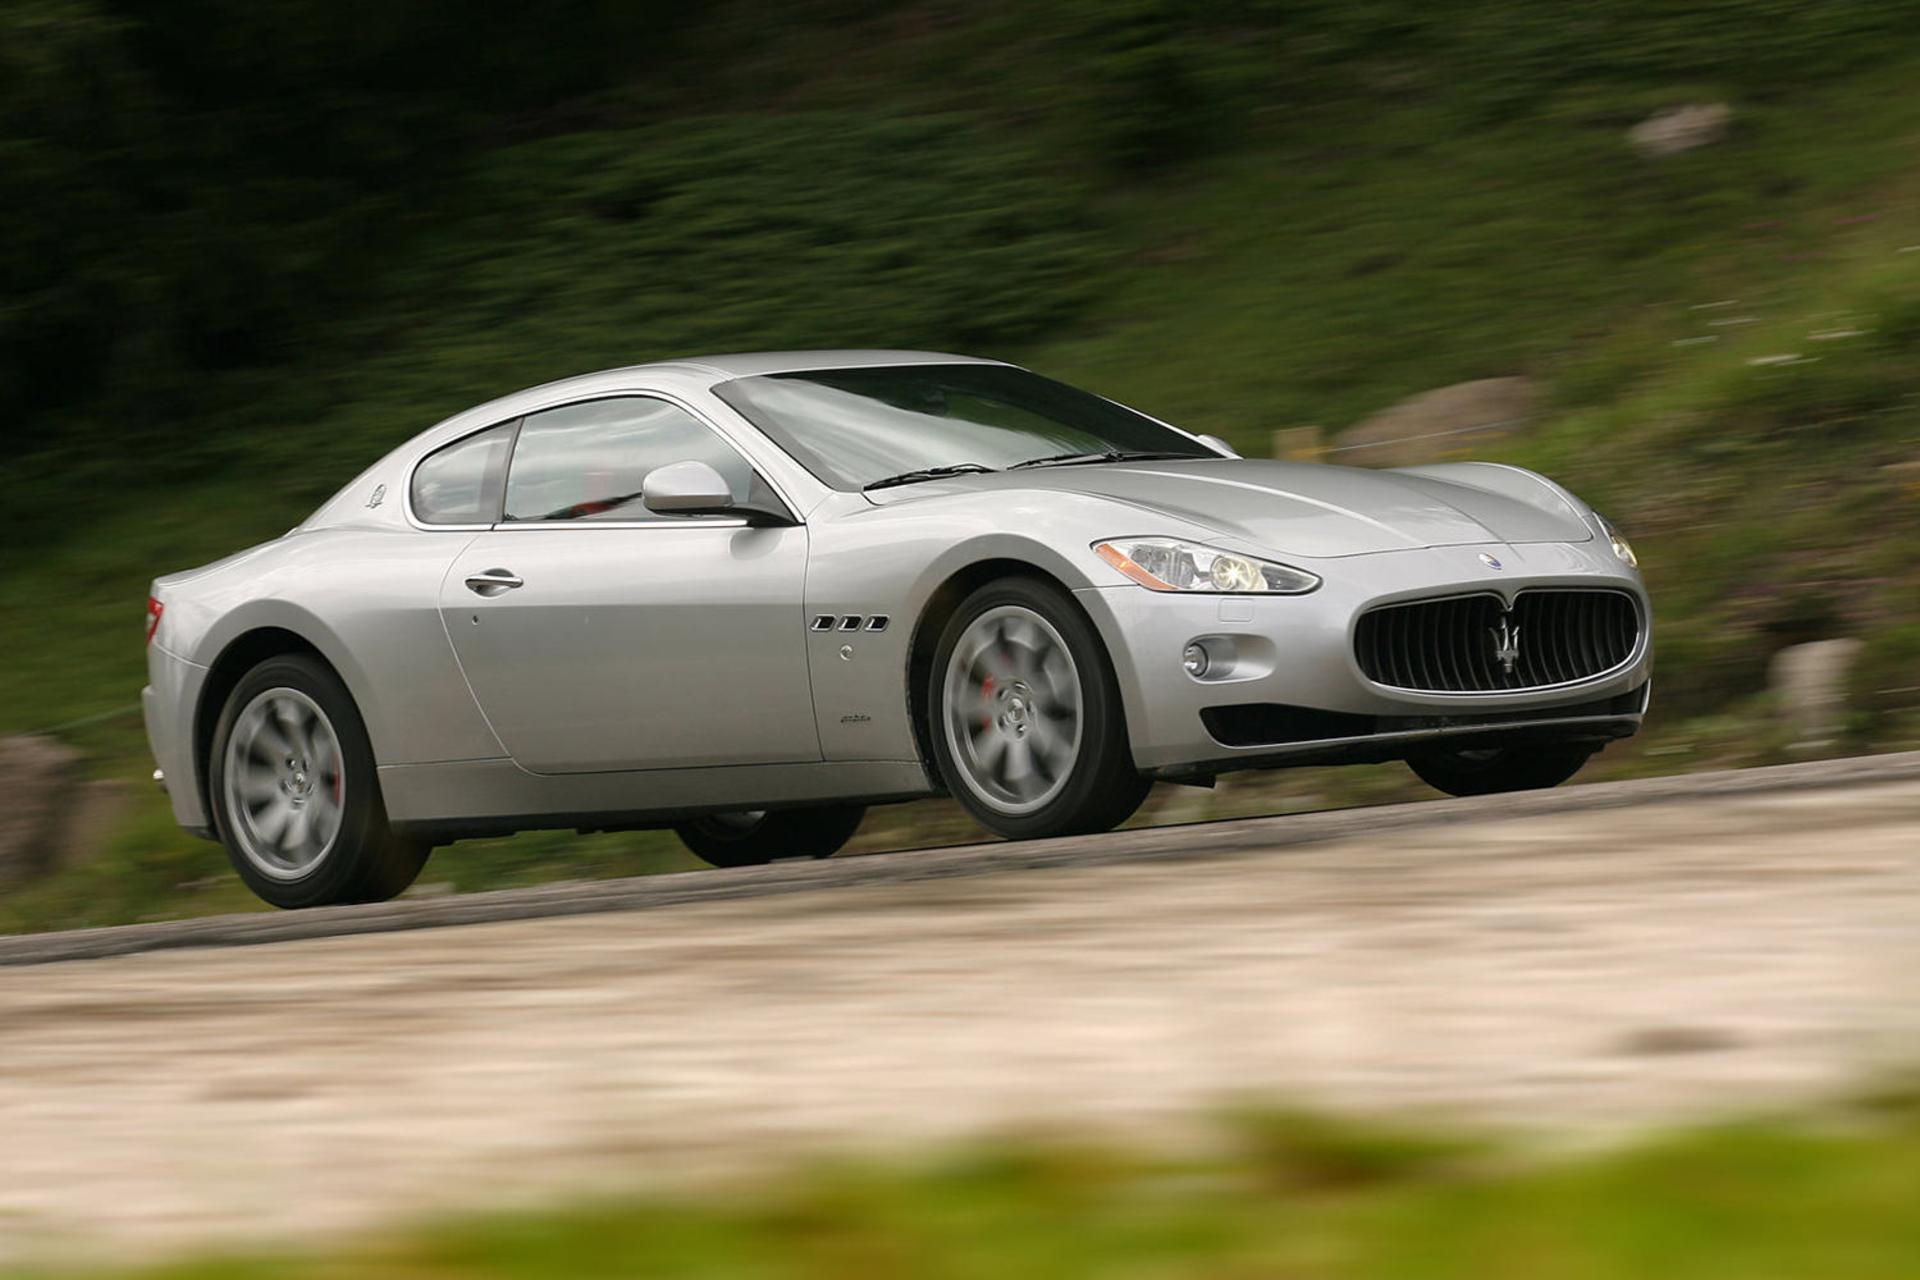 خودرو مازراتی گرن توریسمو ۲۰۰۸ / Maserati GranTurismo 2008 نمای جلو ۰۴